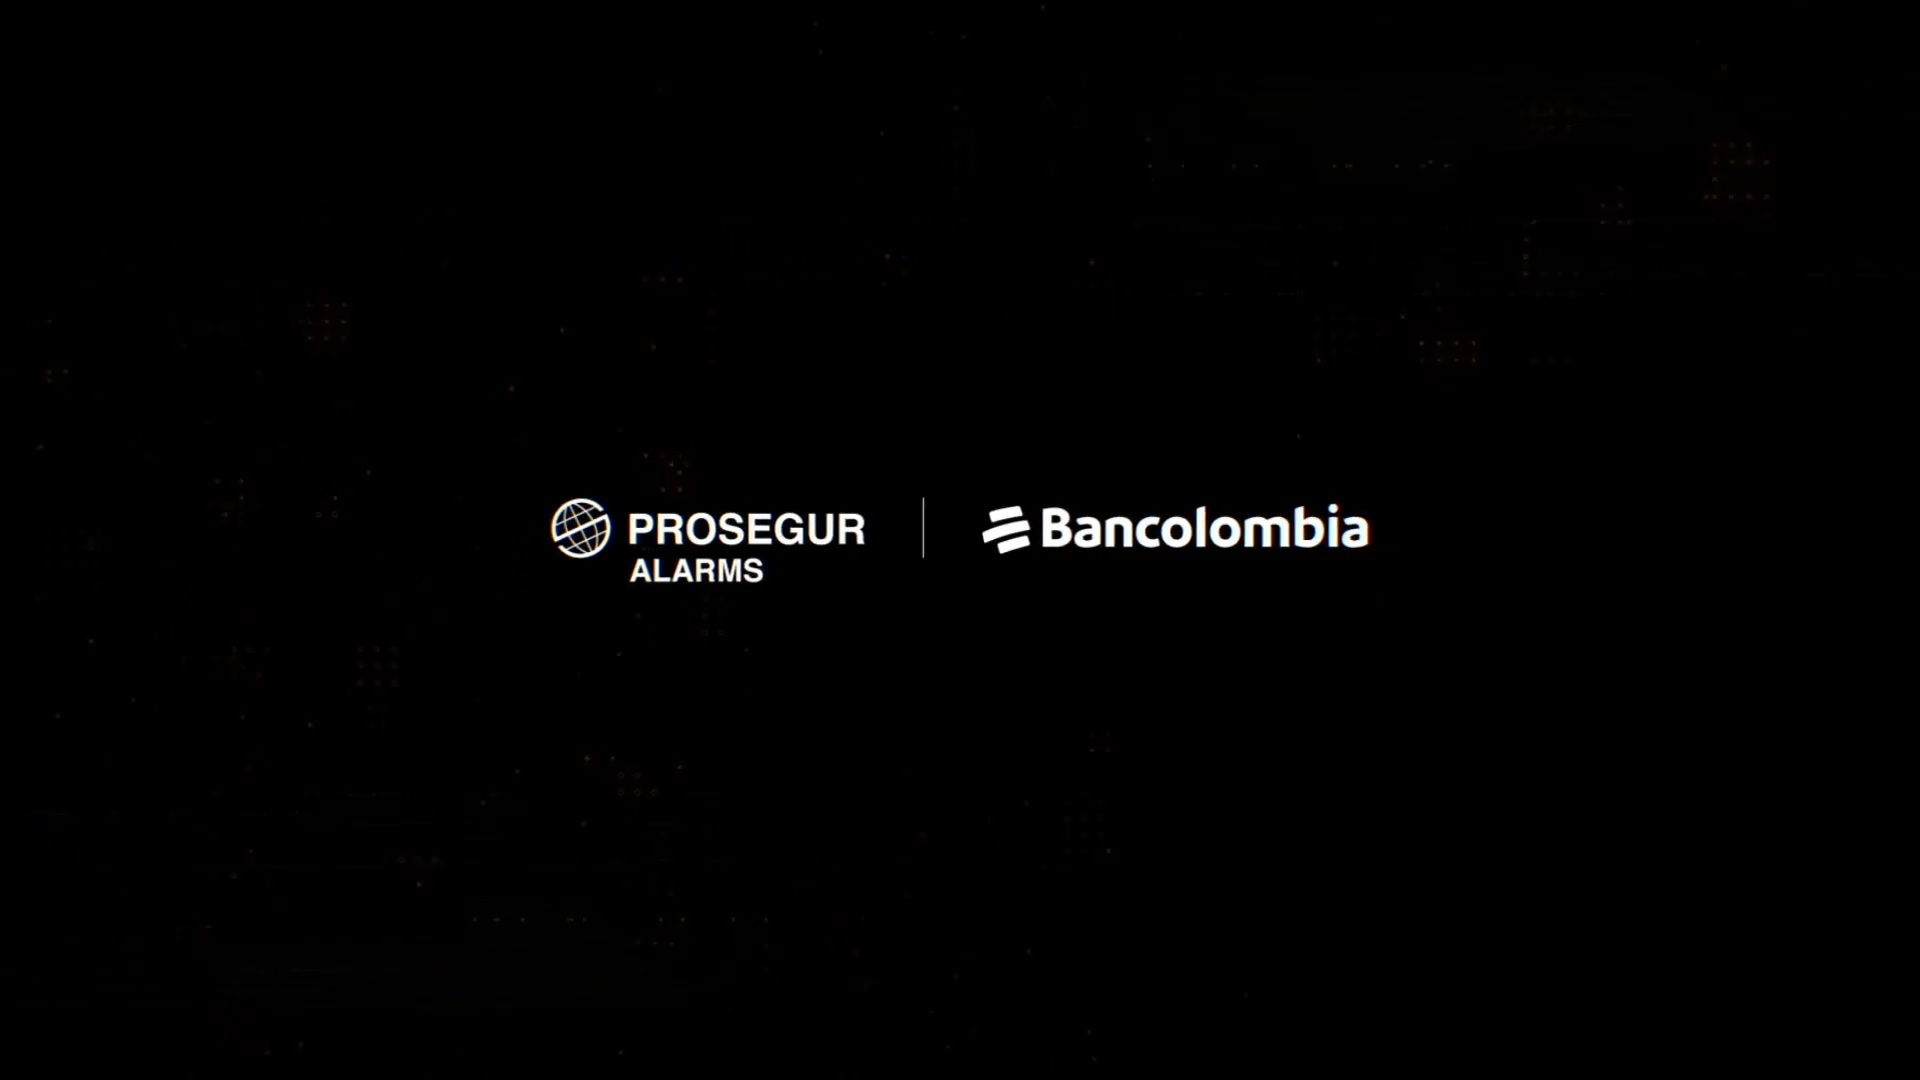 Prosegur anuncia alianza con Bancolombia